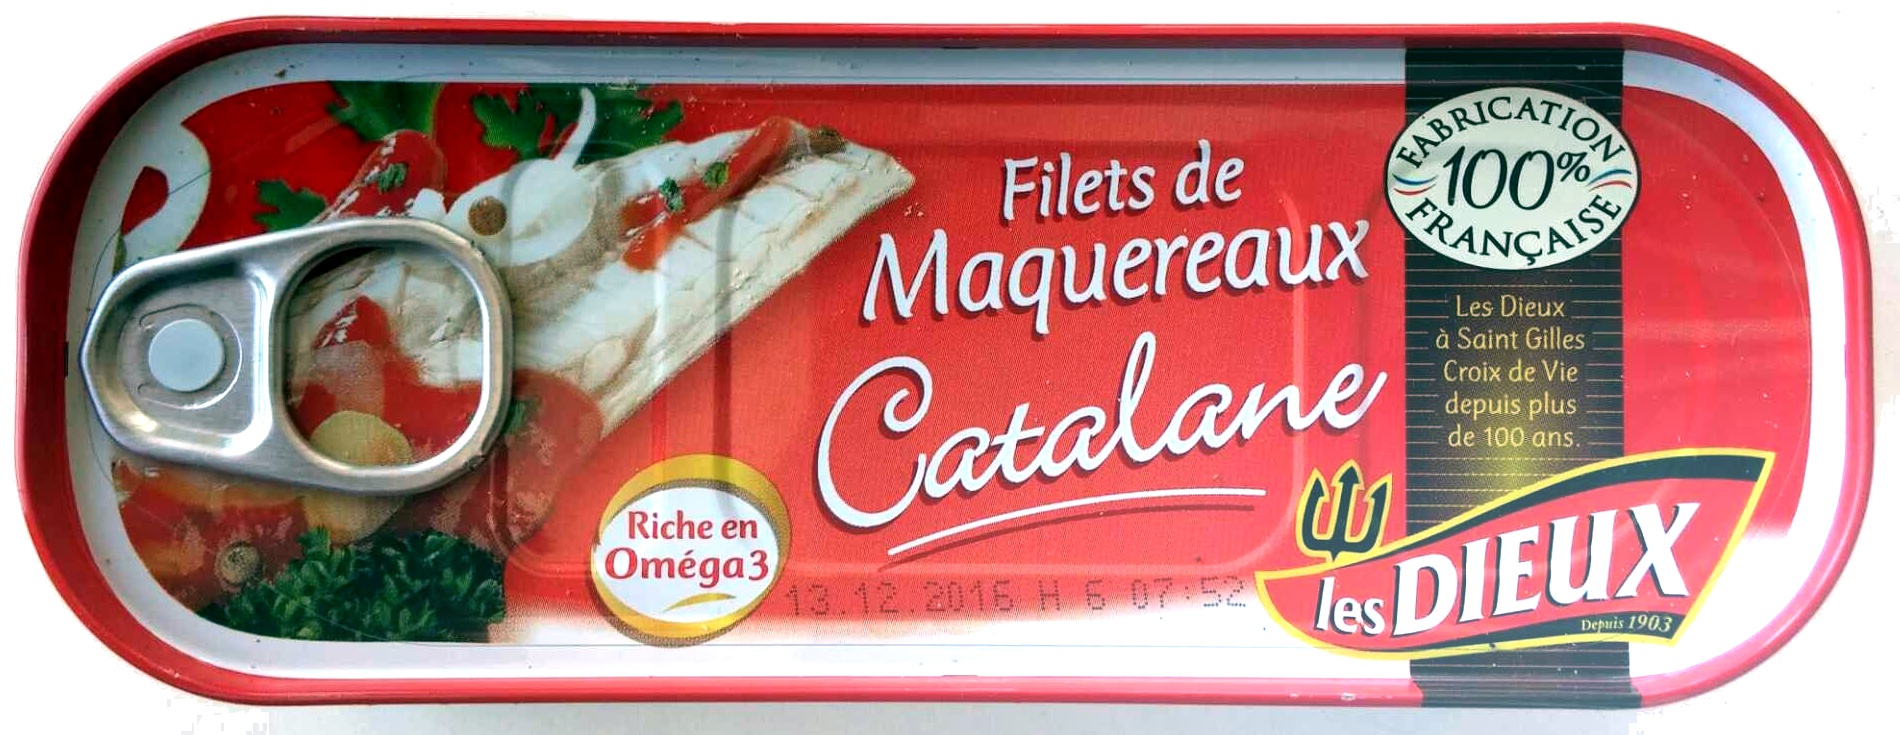 Filets de Maquereaux Catalane - Produit